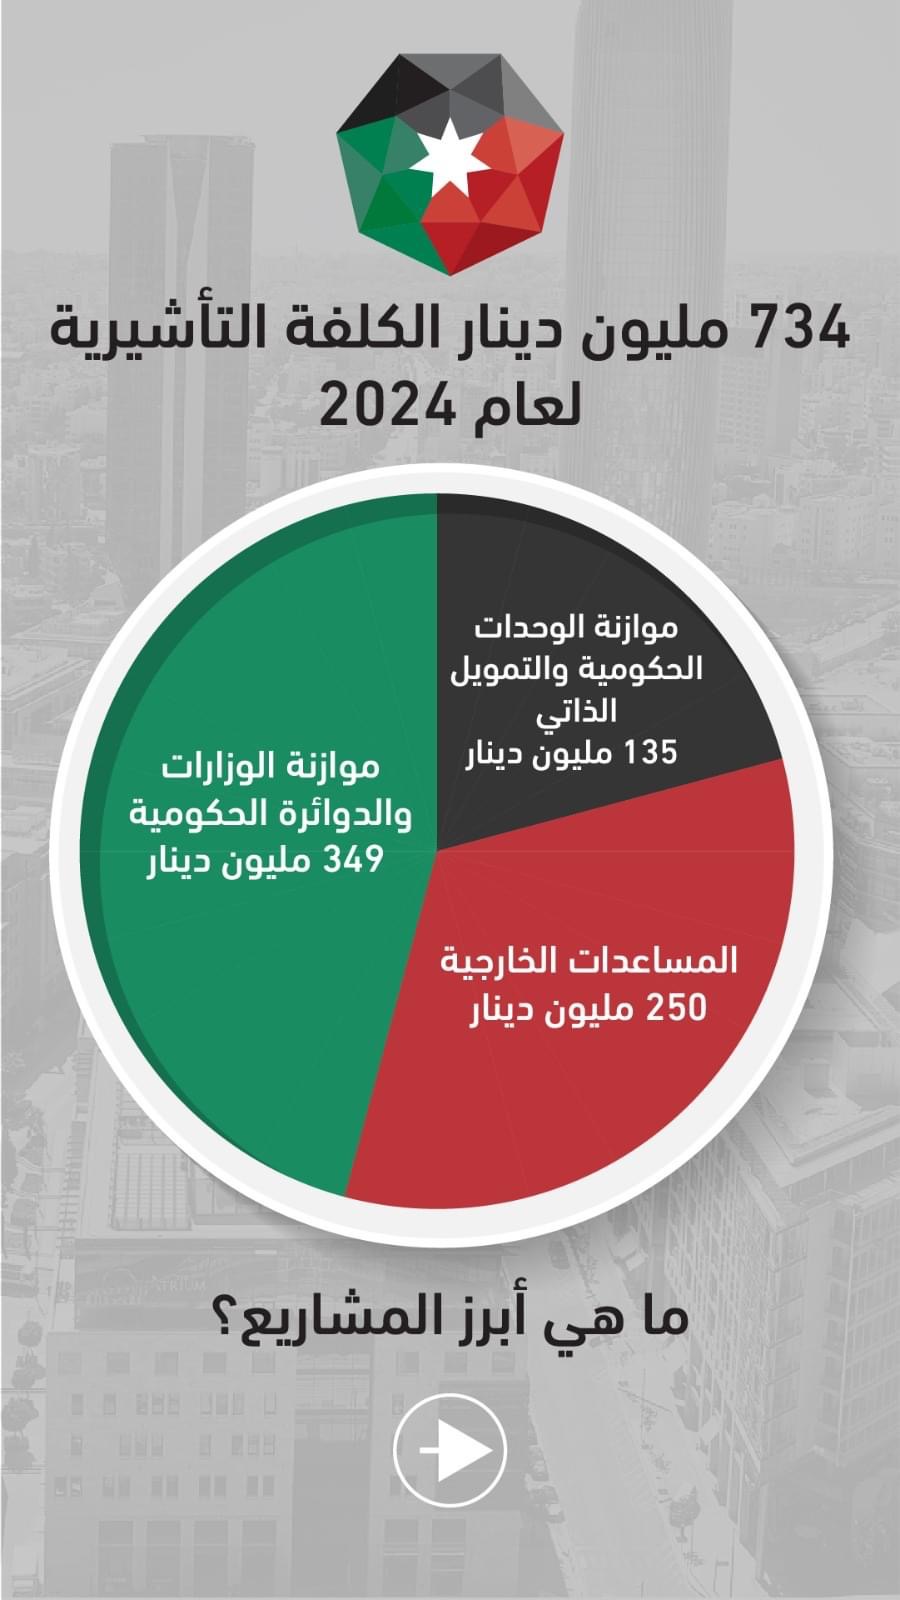 الحكومة: 83 مليون دينار في مشروع قانون الموازنة للتخفيف من تداعيات حرب غزة على قطاع السياحة